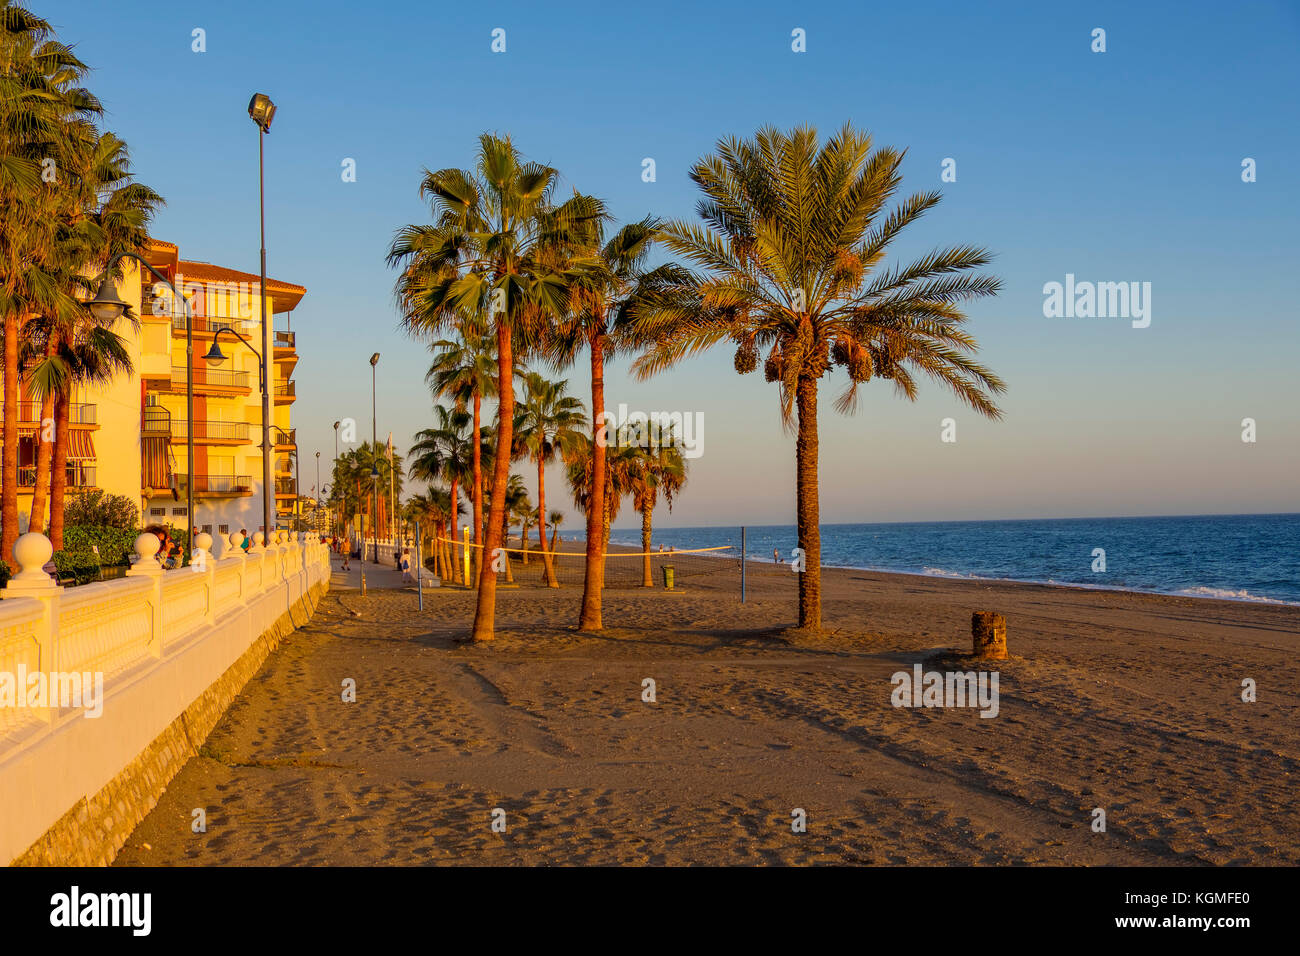 El Cenicero beach, El Morche, Torrox coast. La Axarquia, Malaga province. Costa del Sol, Andalusia. Southern Spain Europe Stock Photo